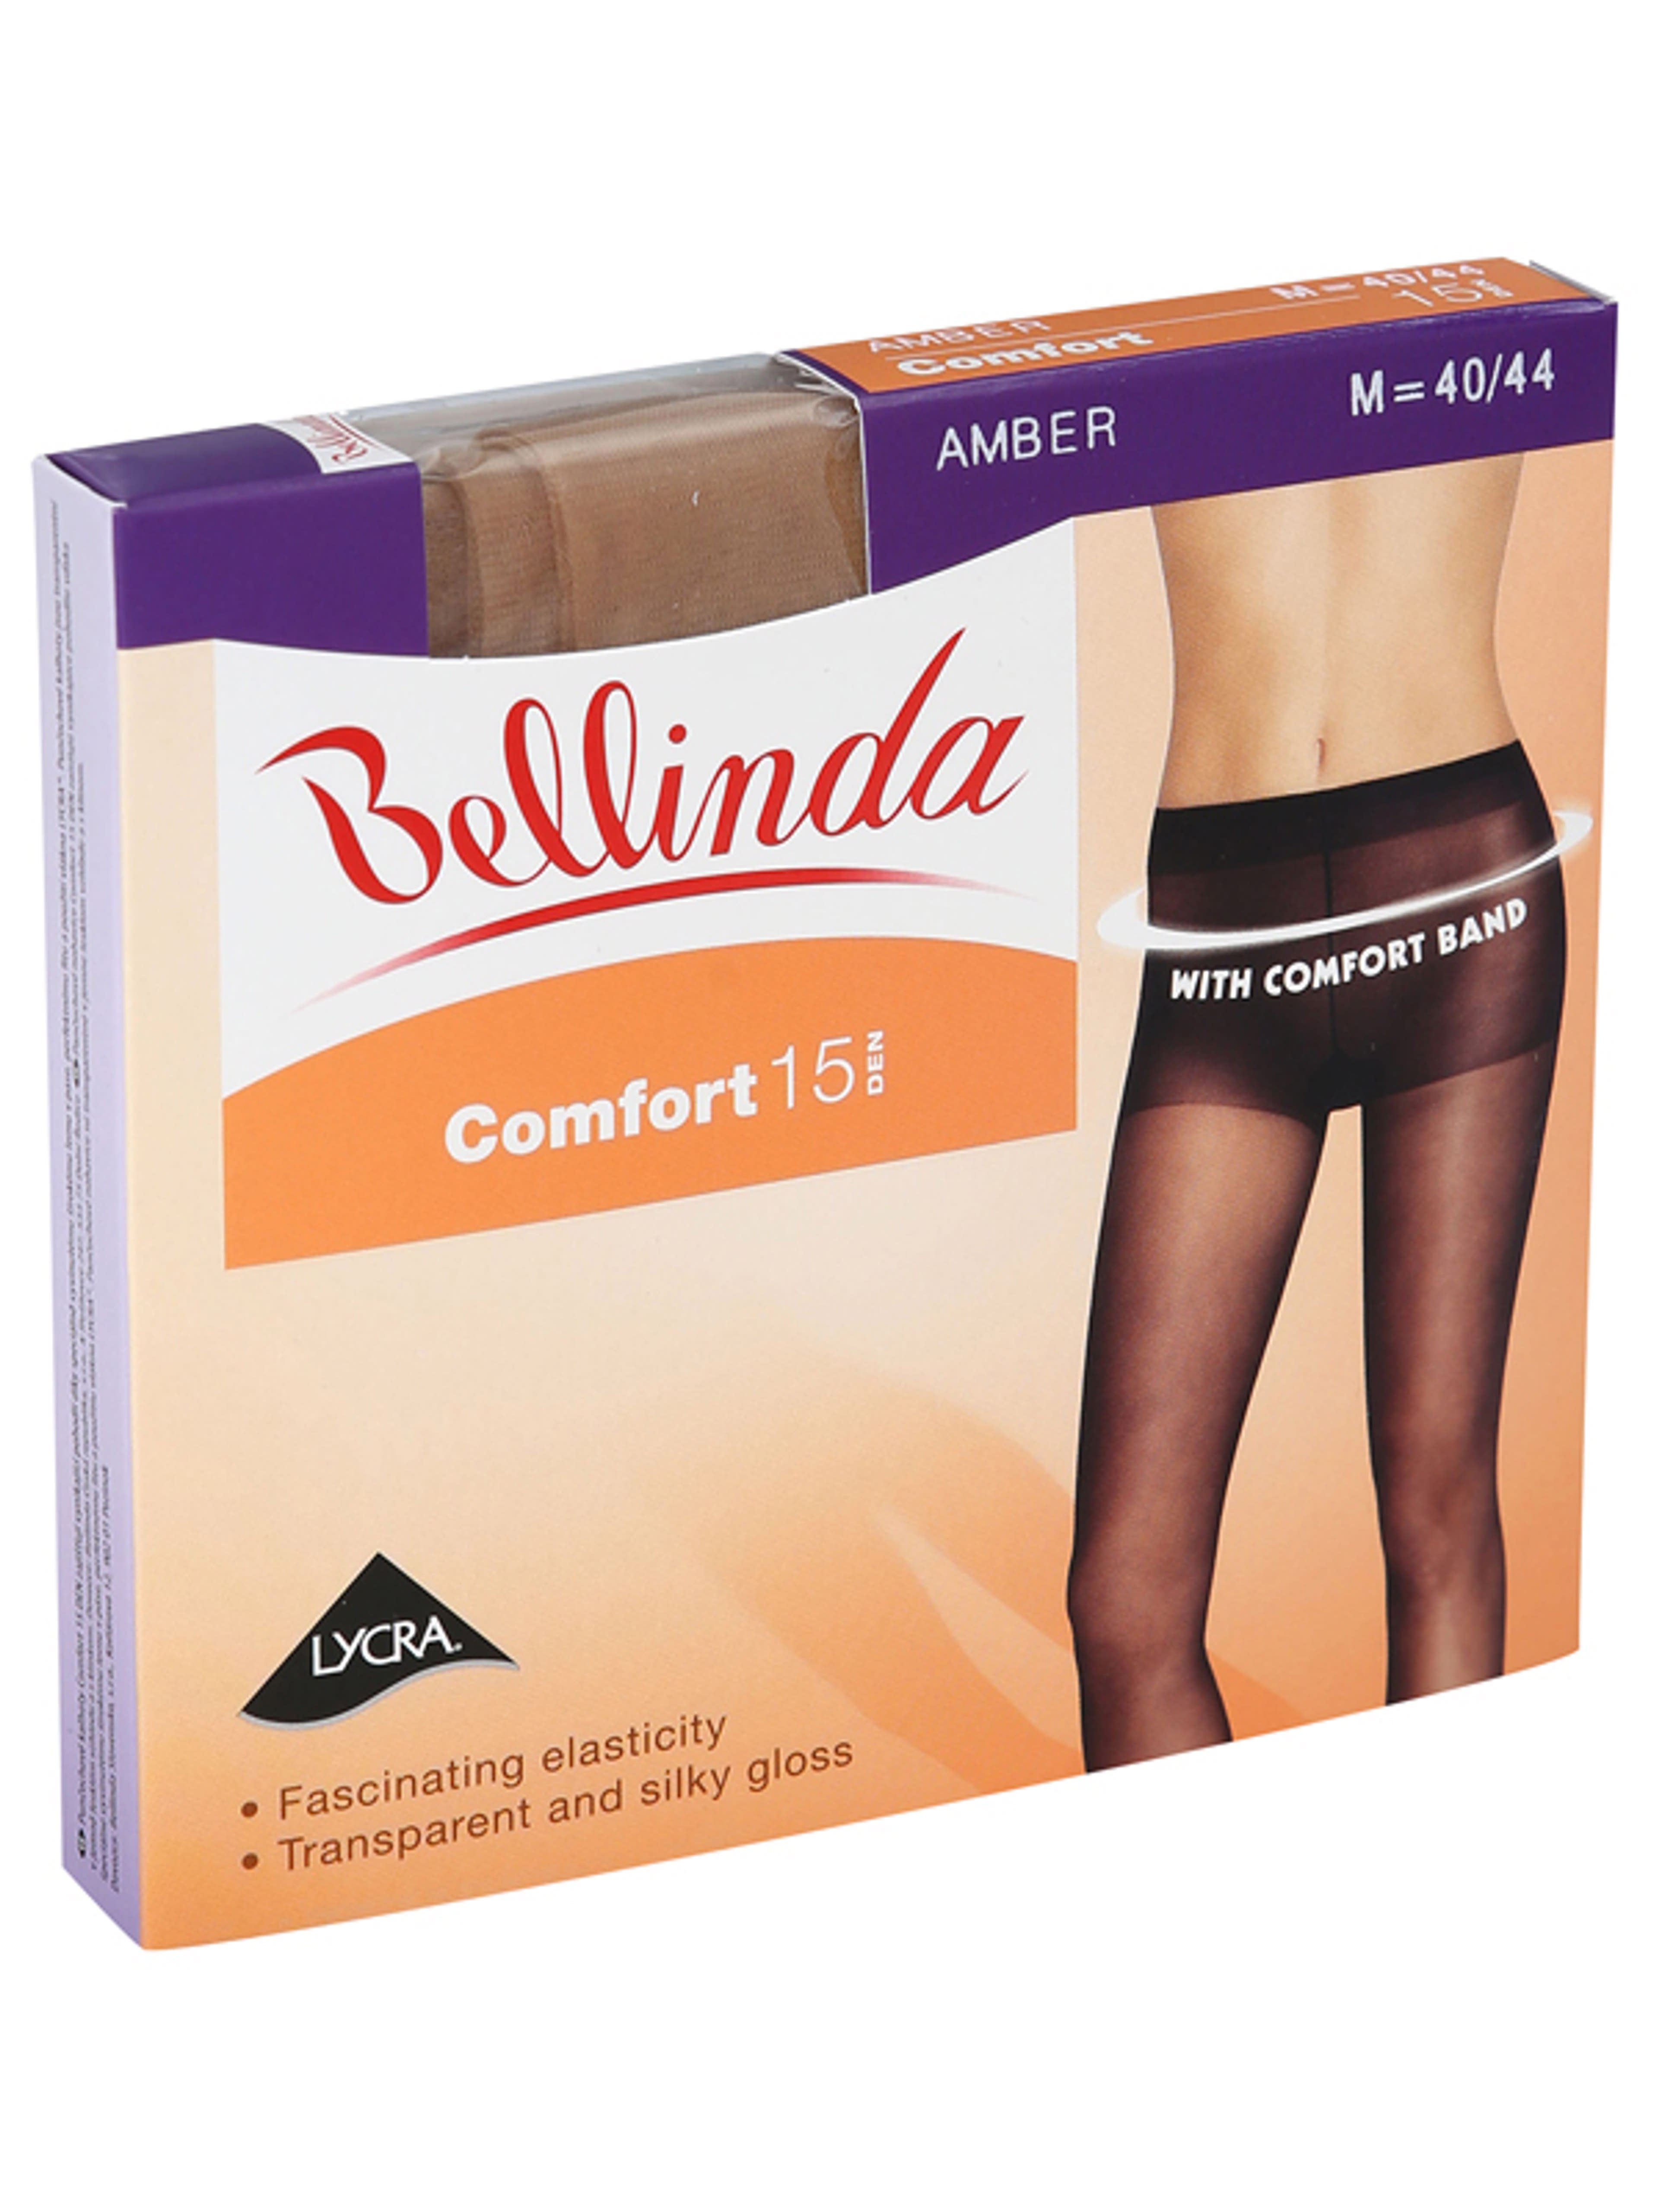 Bellinda Comfort 15 Den Amber M Harisnya - 1 db-1